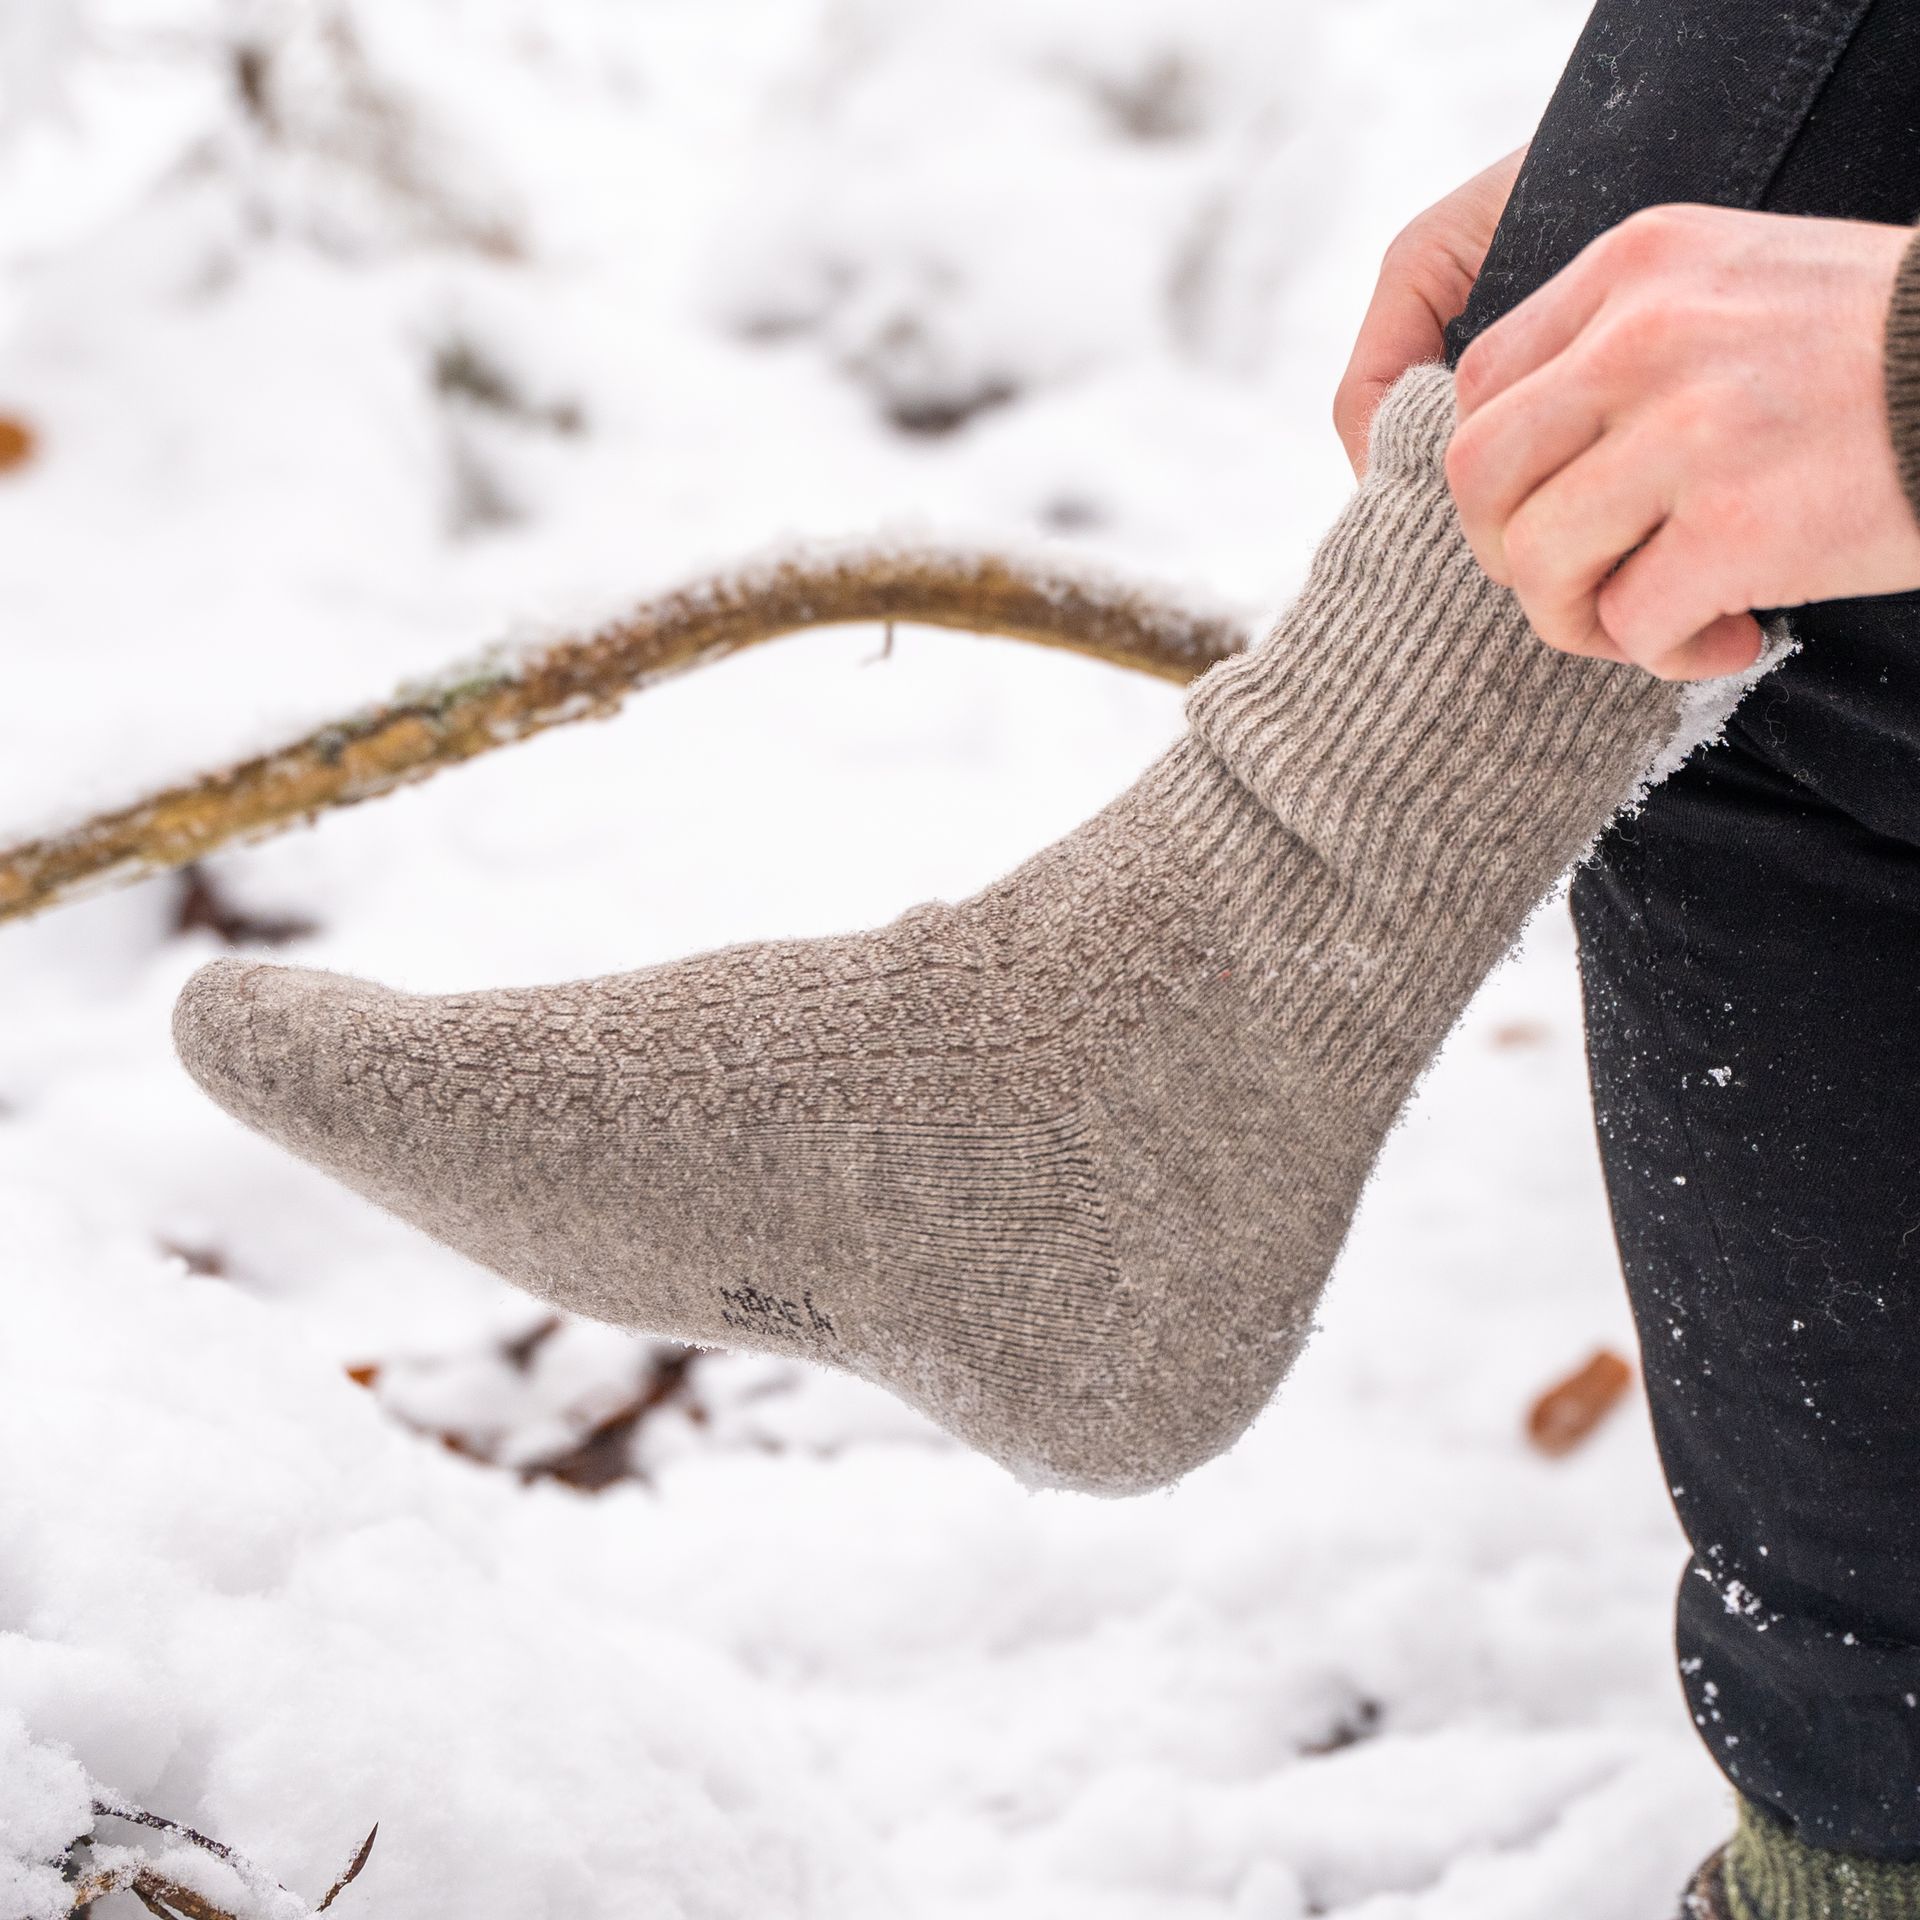 Naturgraue Socken werden in einer schneebedeckten Landschaft angezogen